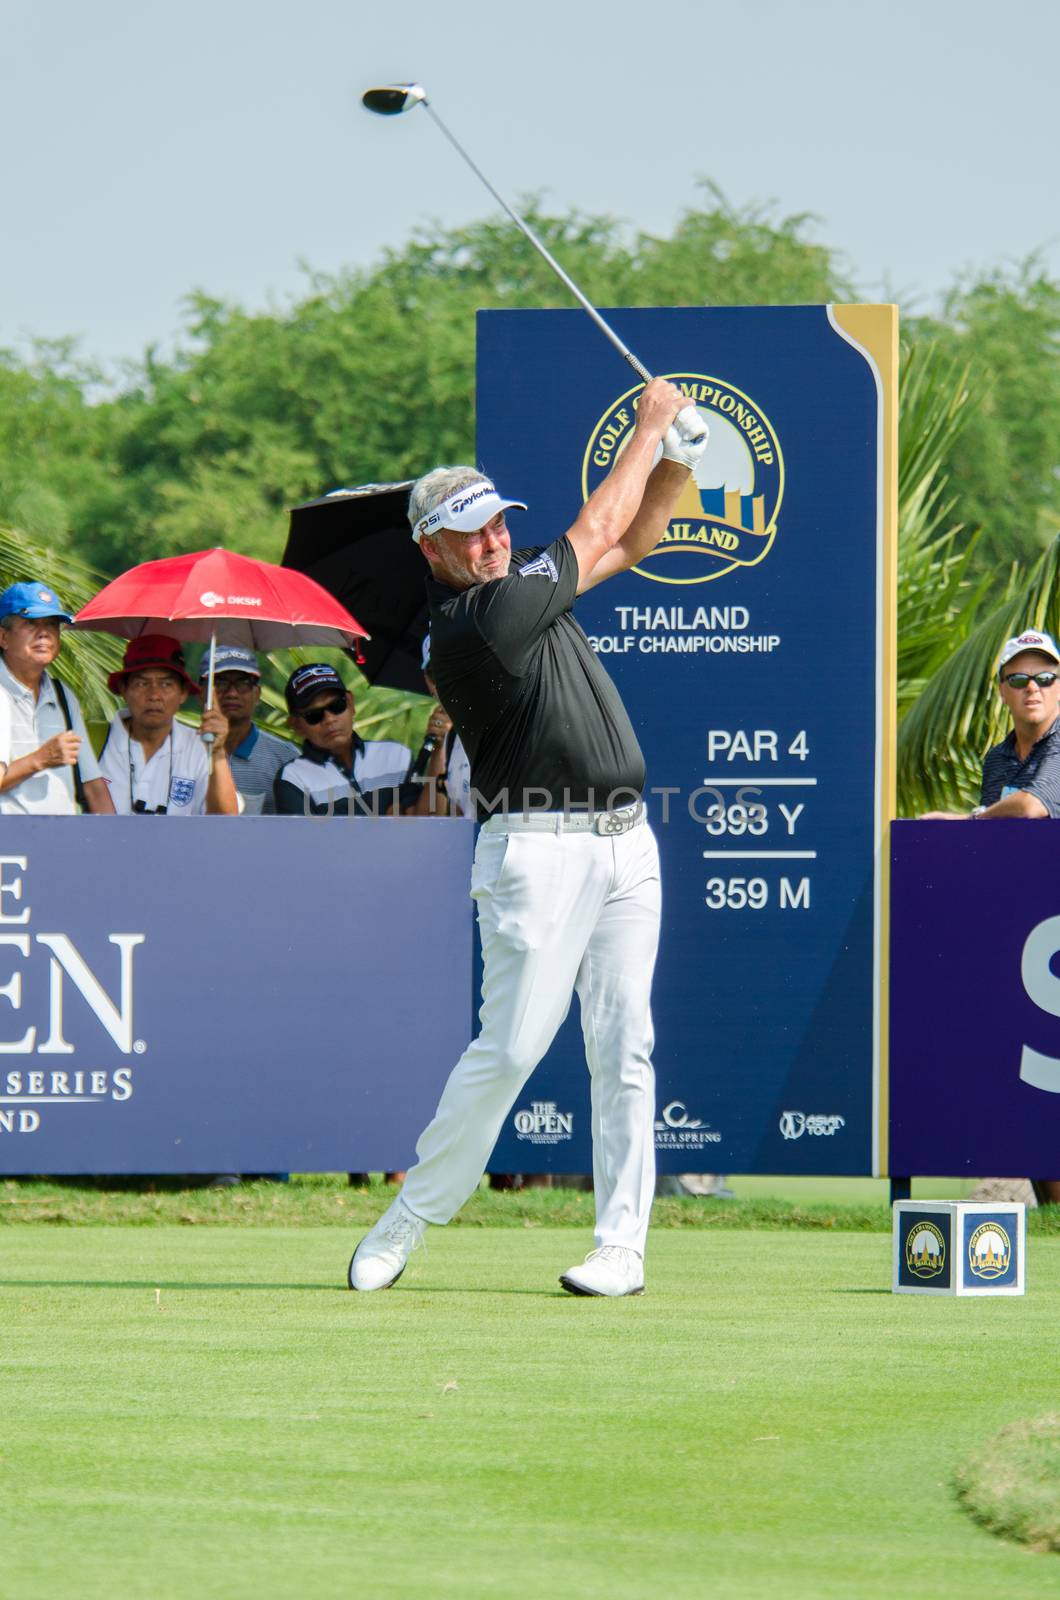 Darren Clarke in Thailand Golf Championship 2015 by chatchai